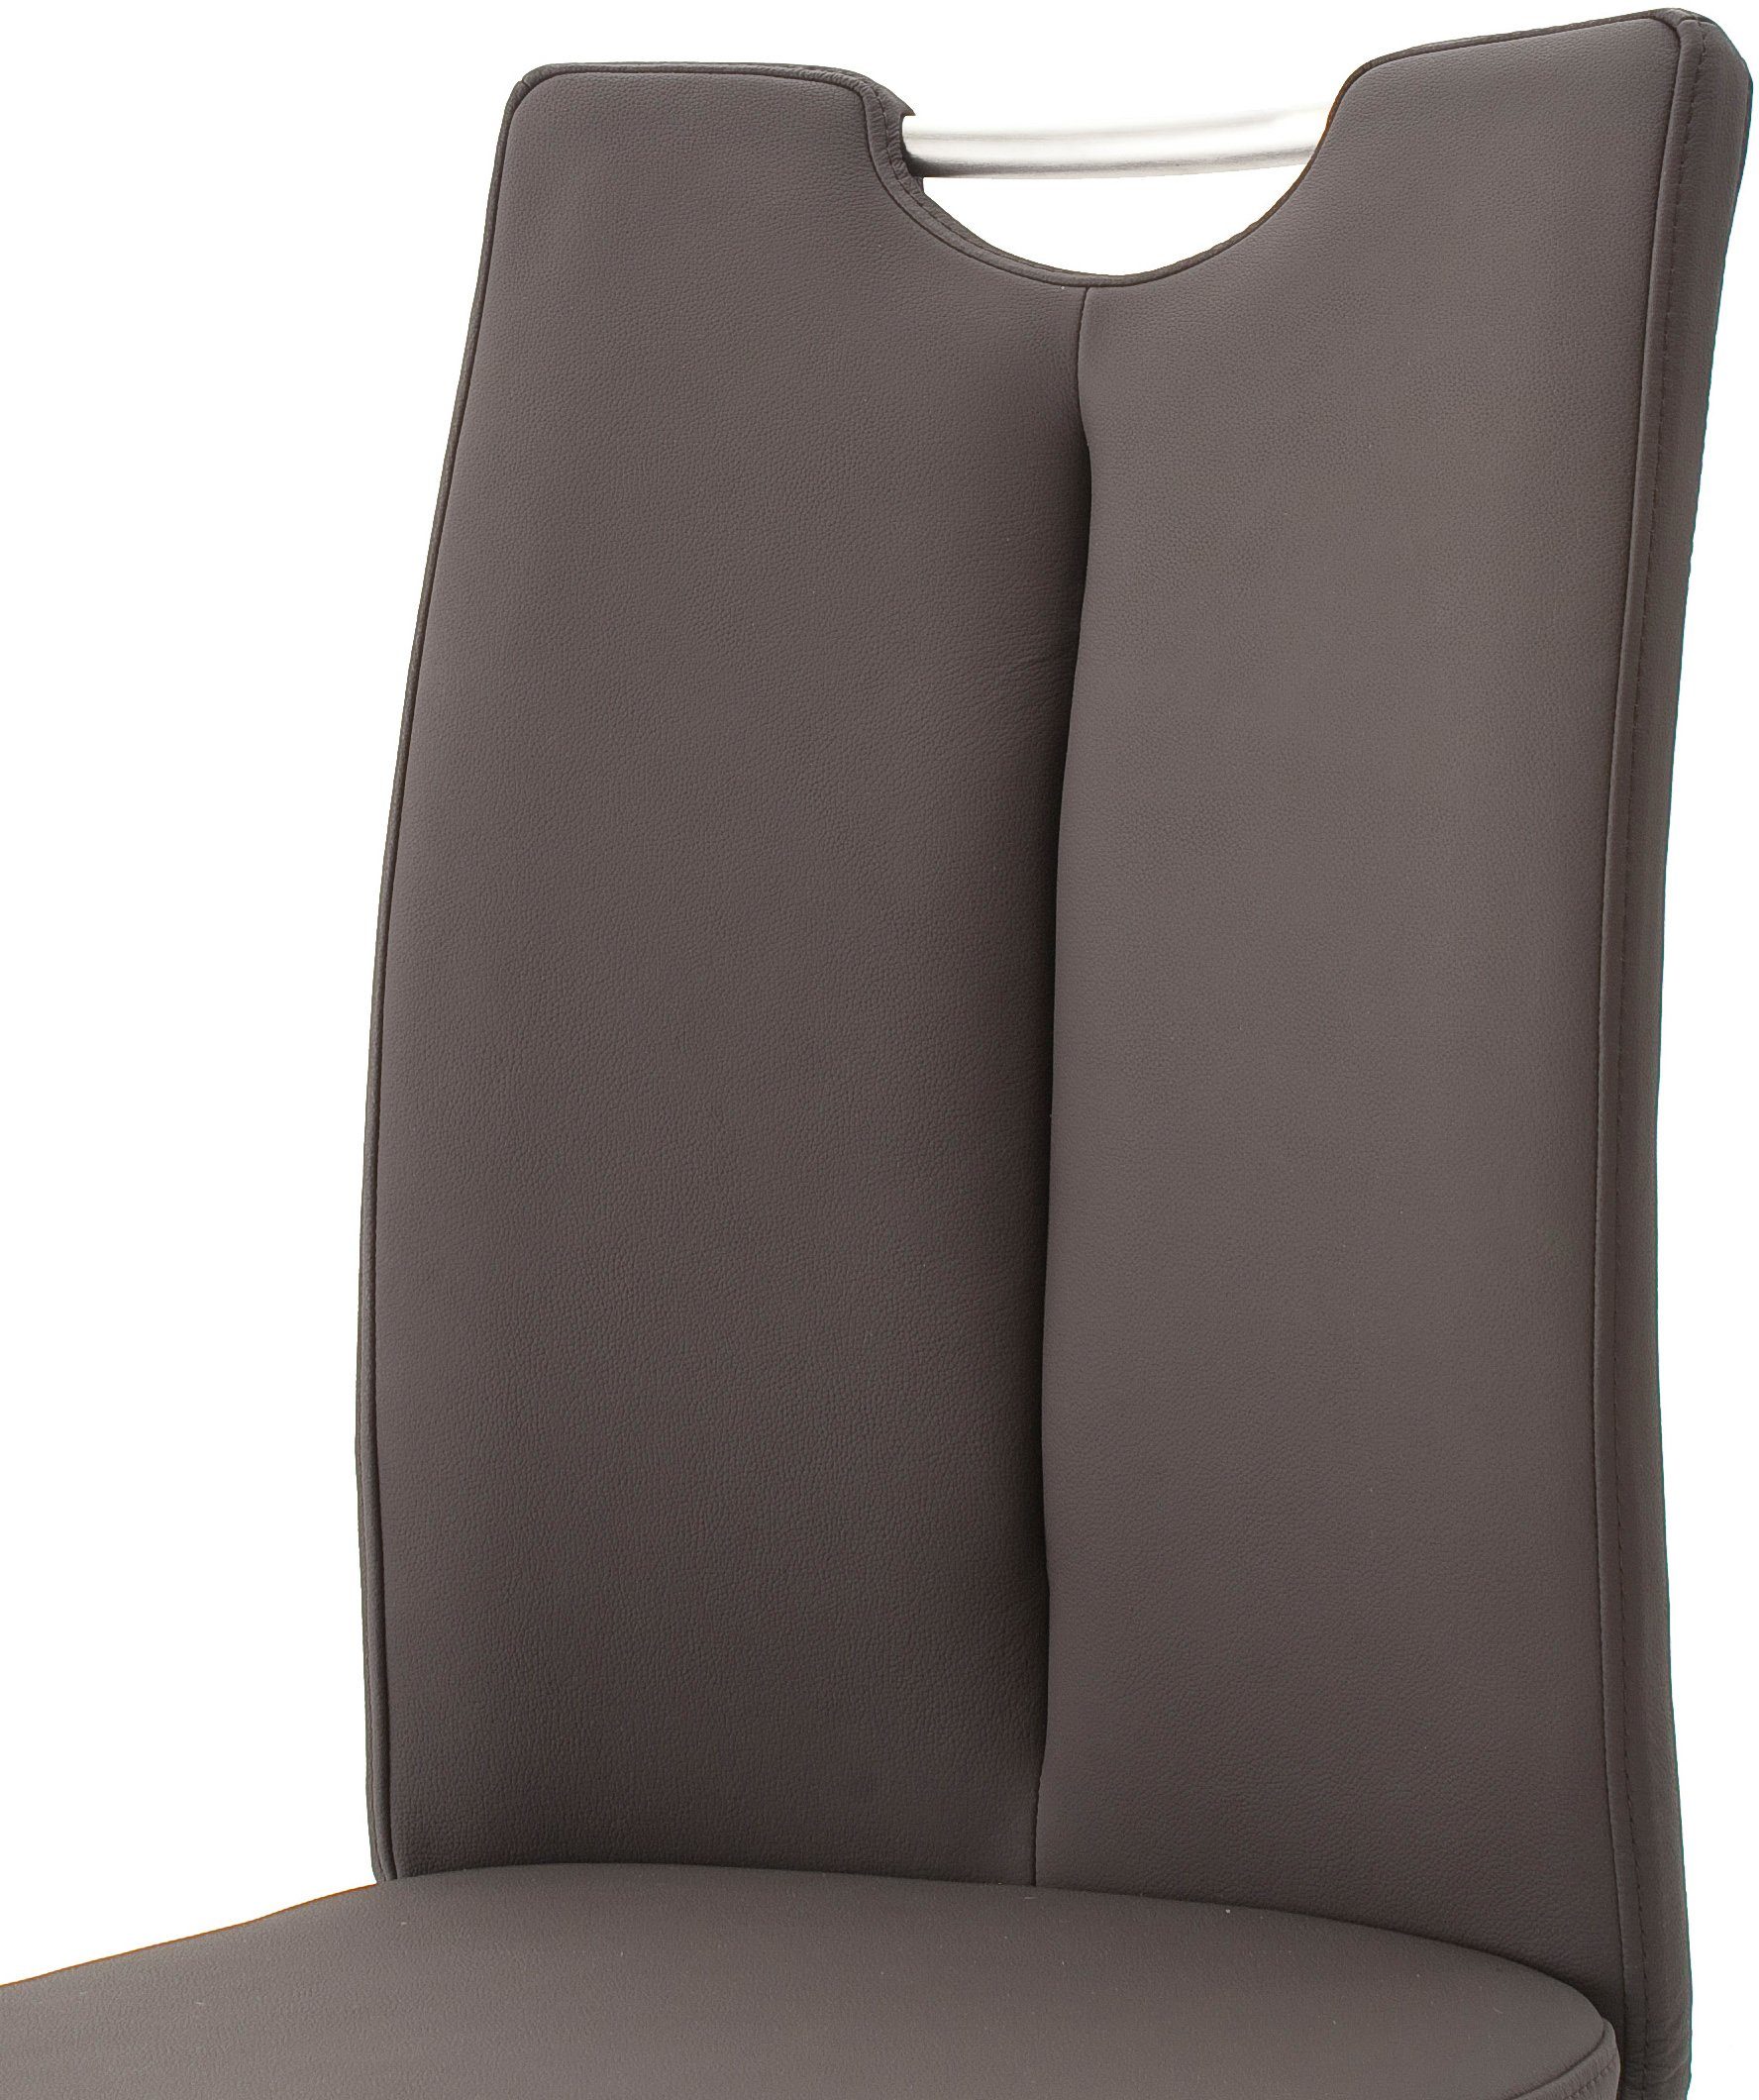 MCA furniture Freischwinger 2 Artos mit Kg belastbar braun/Edelstahl 140 braun | Echtlederbezug, St), (Set, Stuhl bis